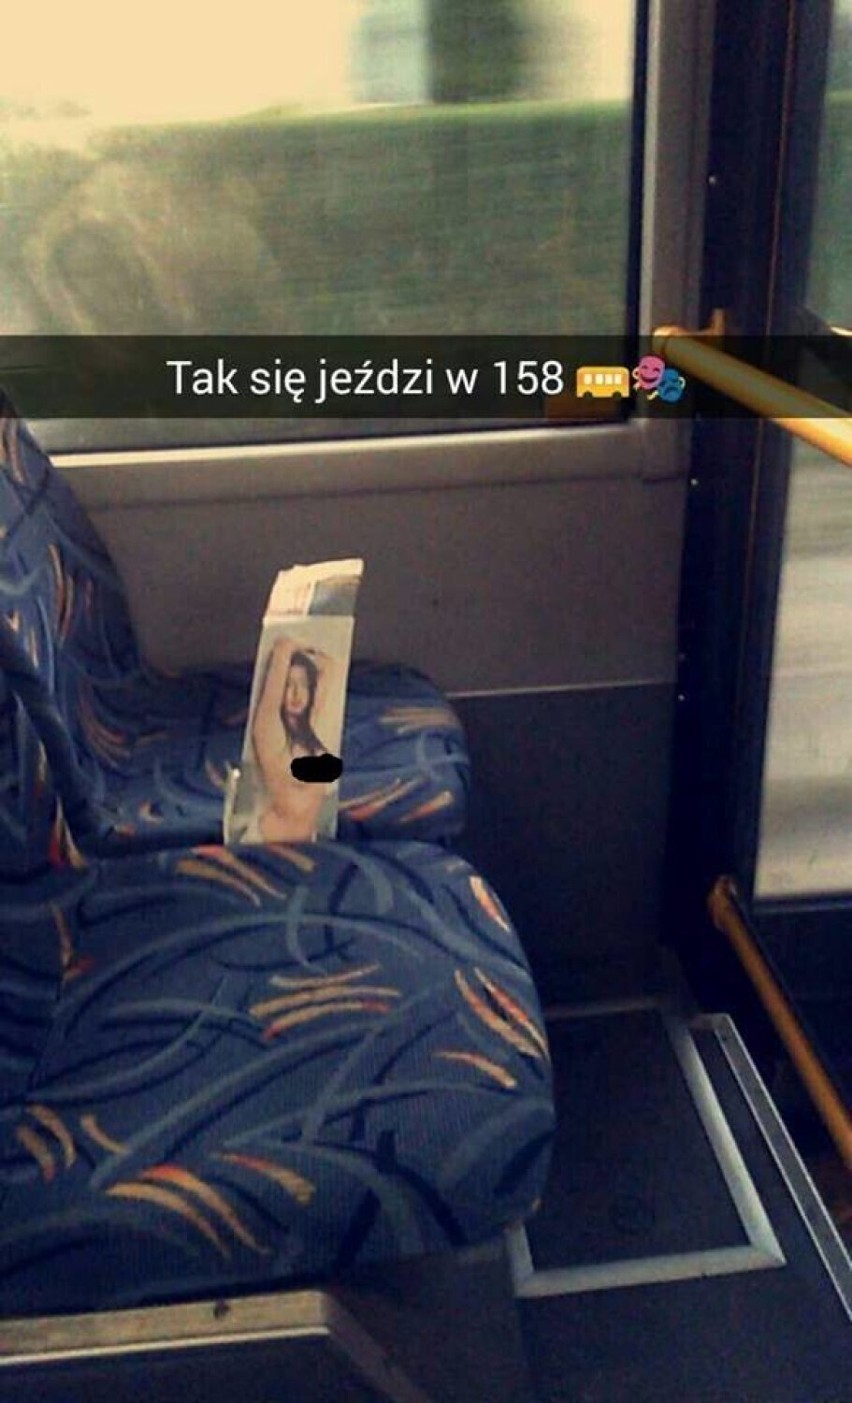 Weszli do autobusu na Śląsku i zamurowało ich!